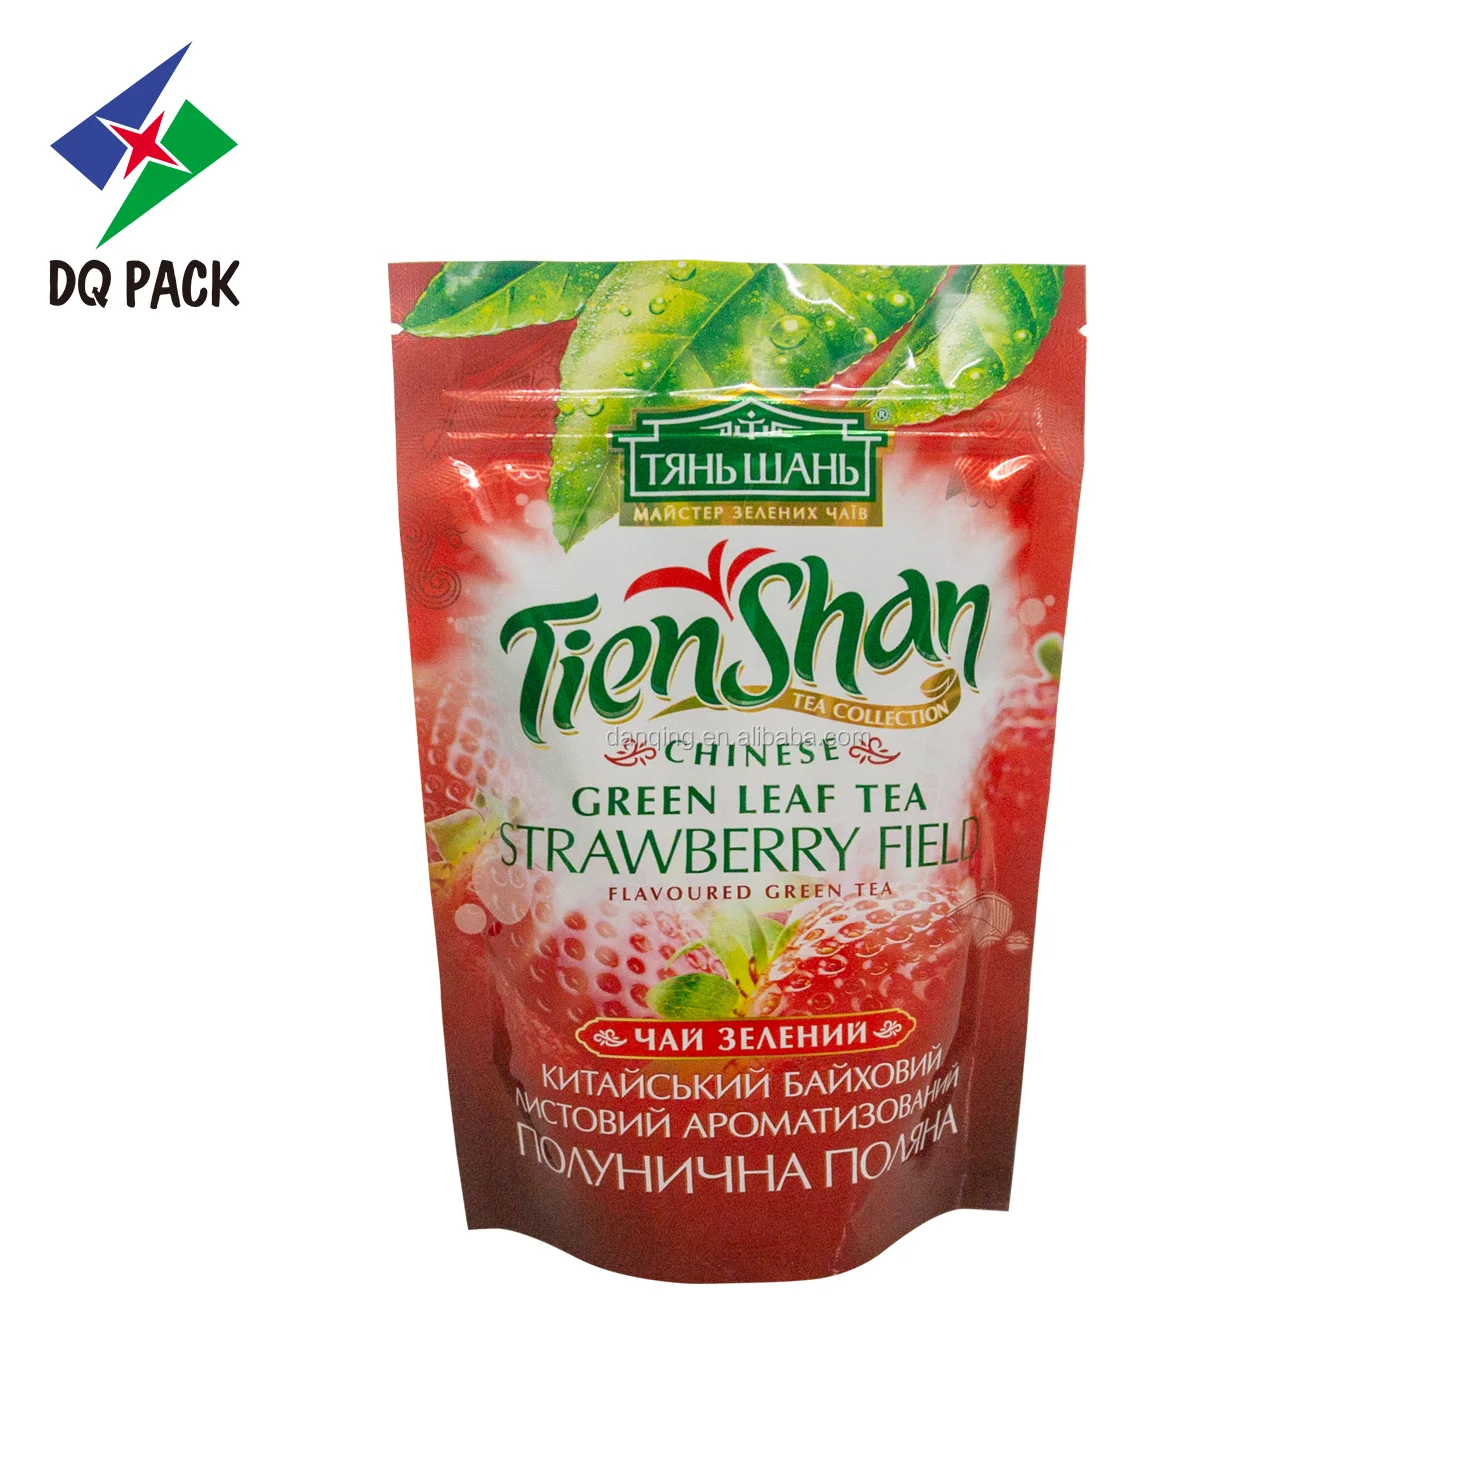 DQ PACK Custom Printed Glossy Food Fruit Herbal Tea Packaging Bag With Zipper